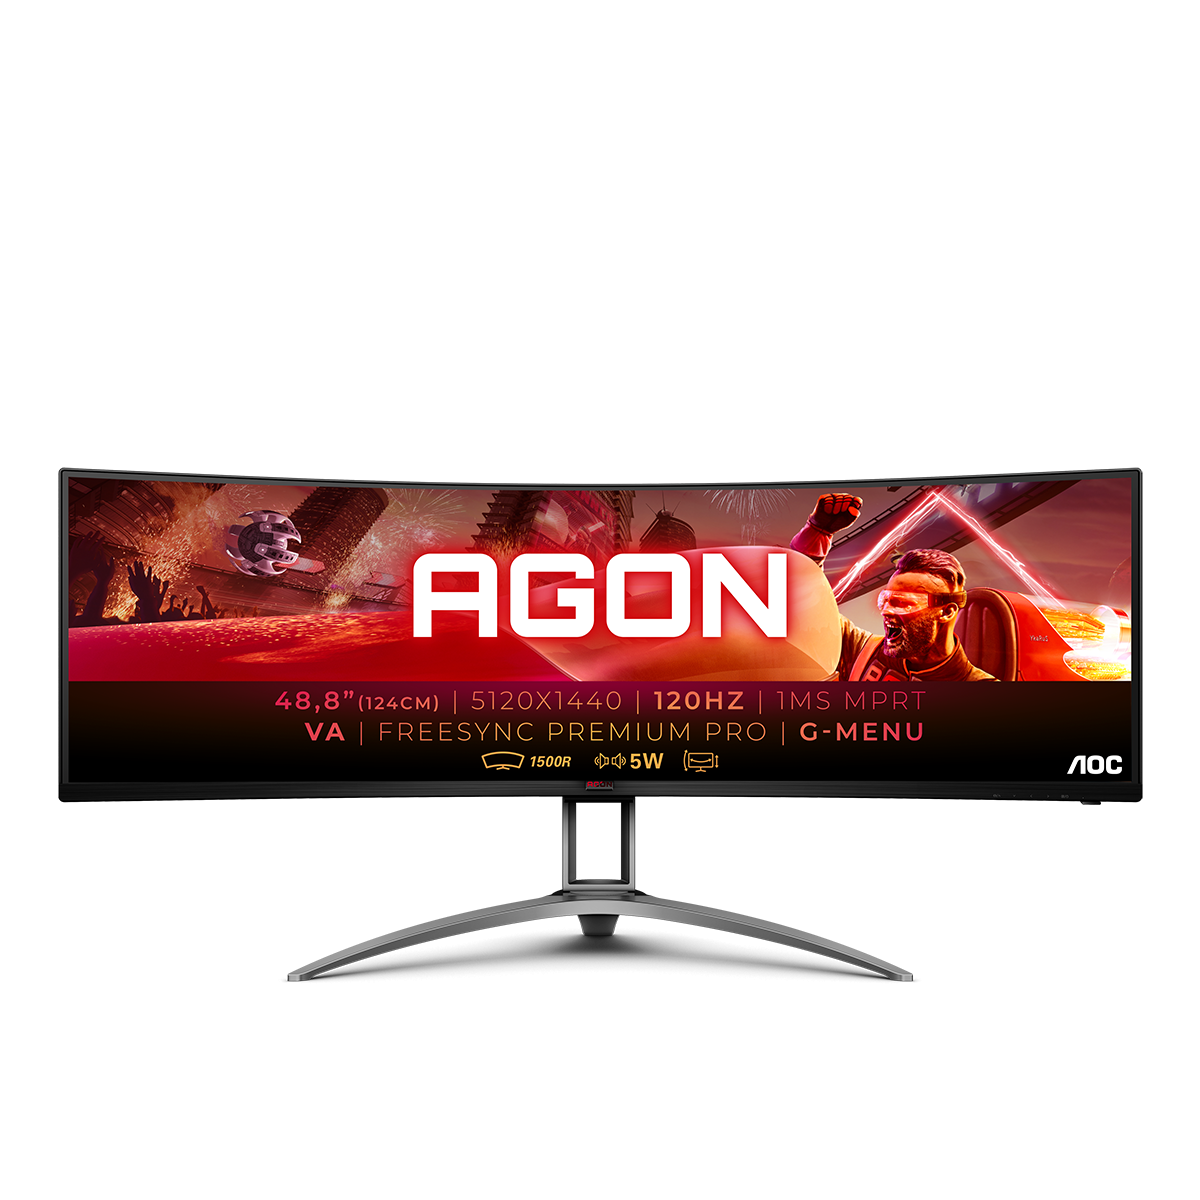 Игровой монитор AOC AGON AG493UCX в официальном интернет магазине AGONBYAOC.ru (AOC Россия)